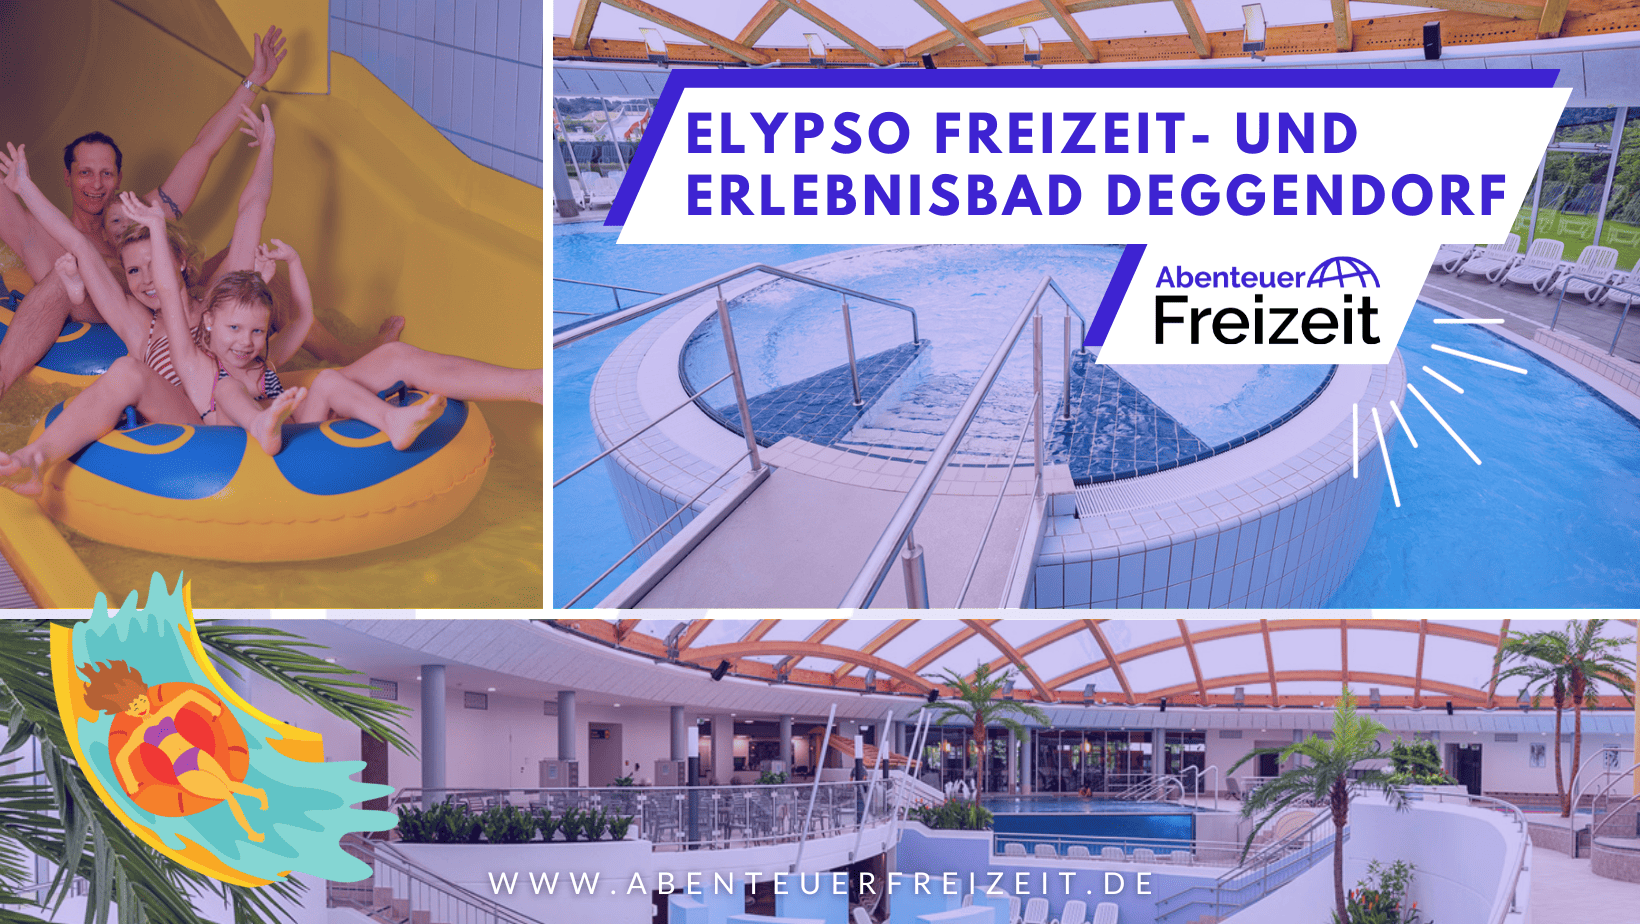 Das elypso Freizeit- und Erlebnisbad Deggendorf, Erlebnisbad in Bayern